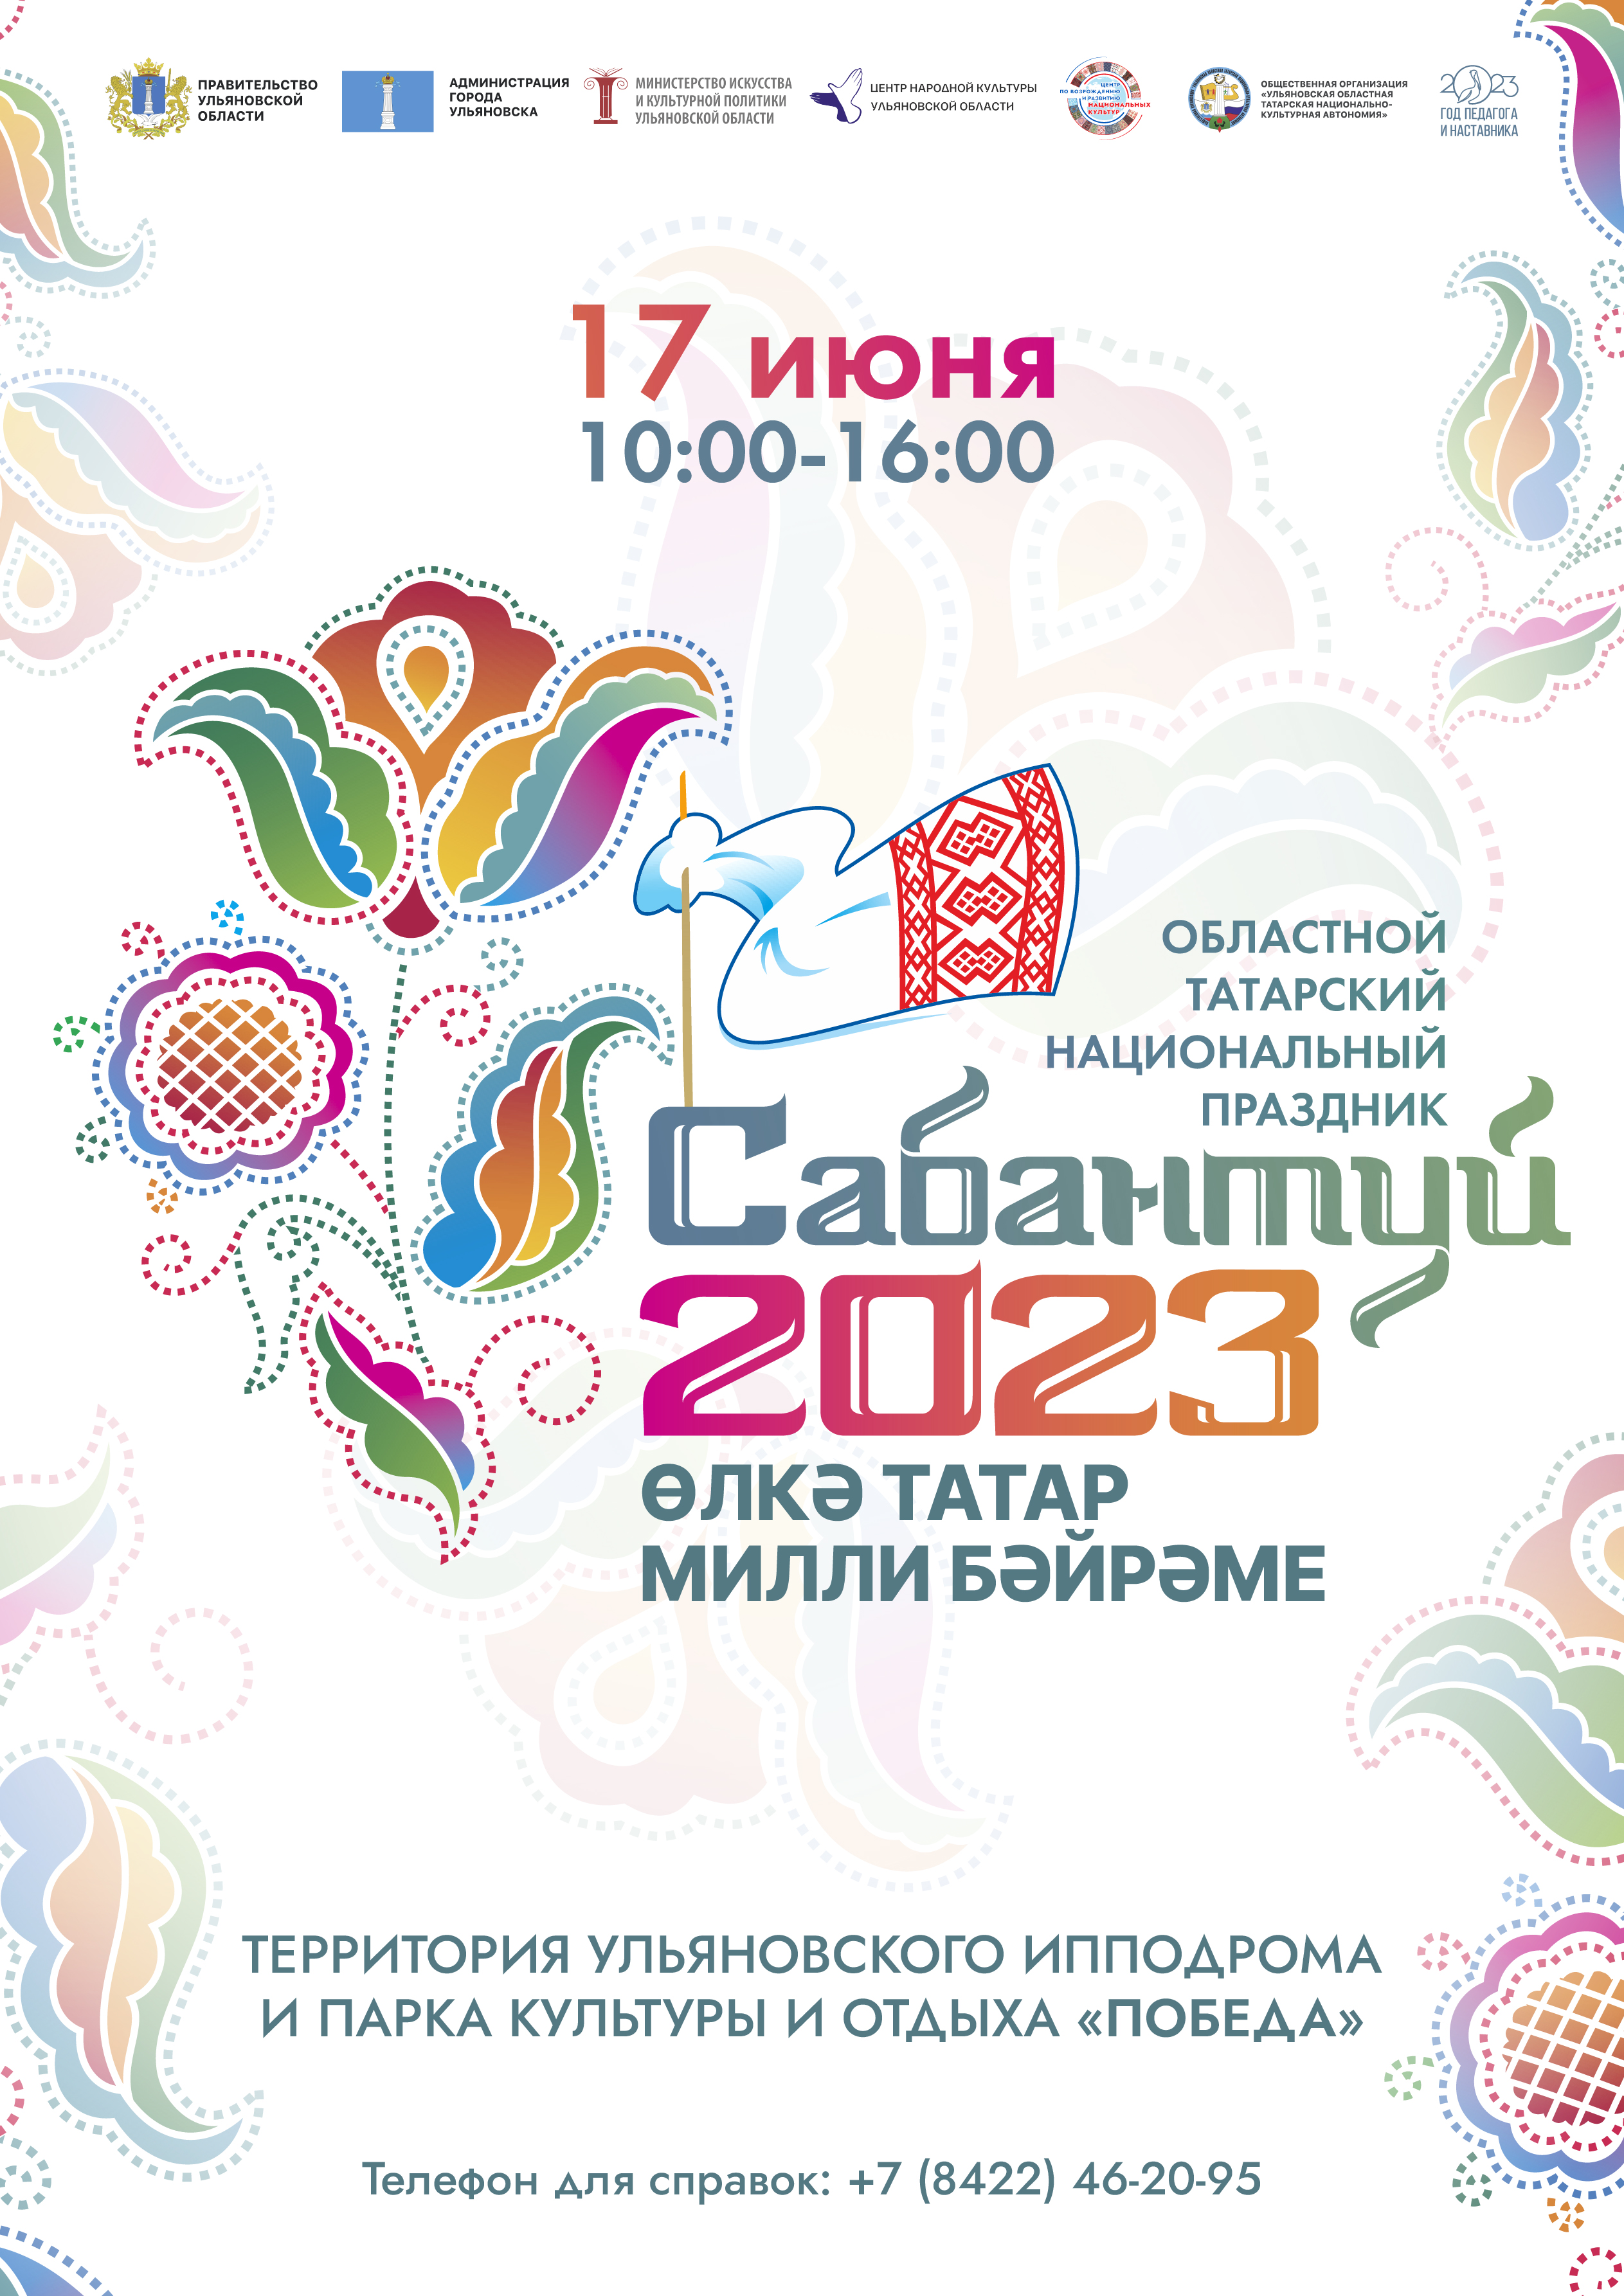 Областной татарский праздник Сабантуй отметят в Ульяновске 17 июня.